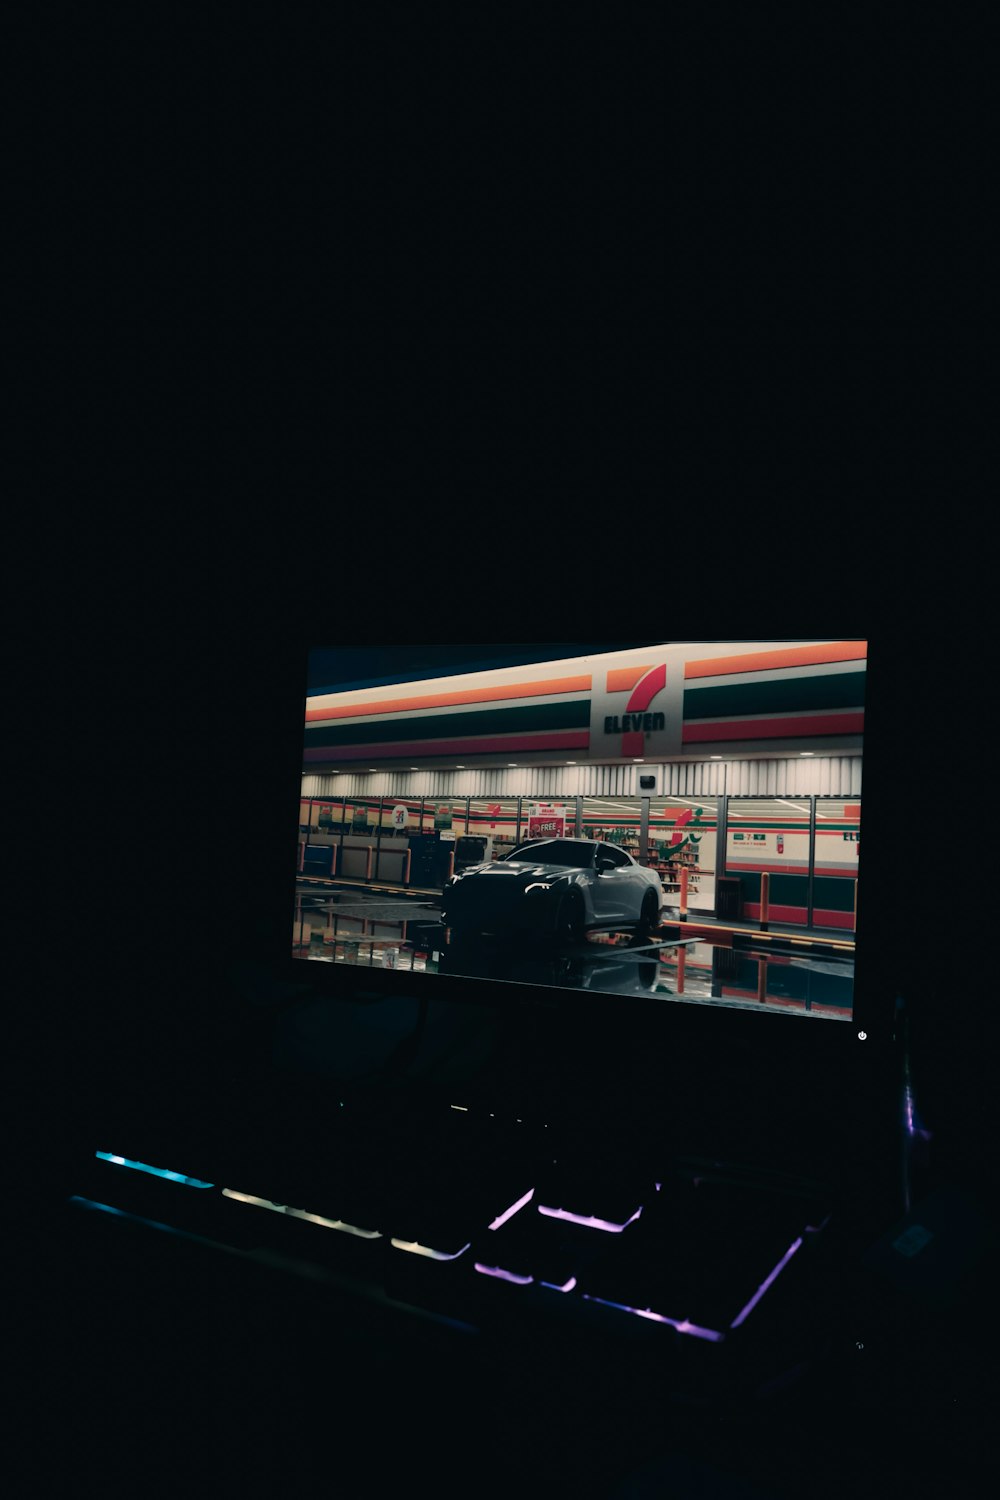 Une voiture s’affiche sur un écran dans l’obscurité